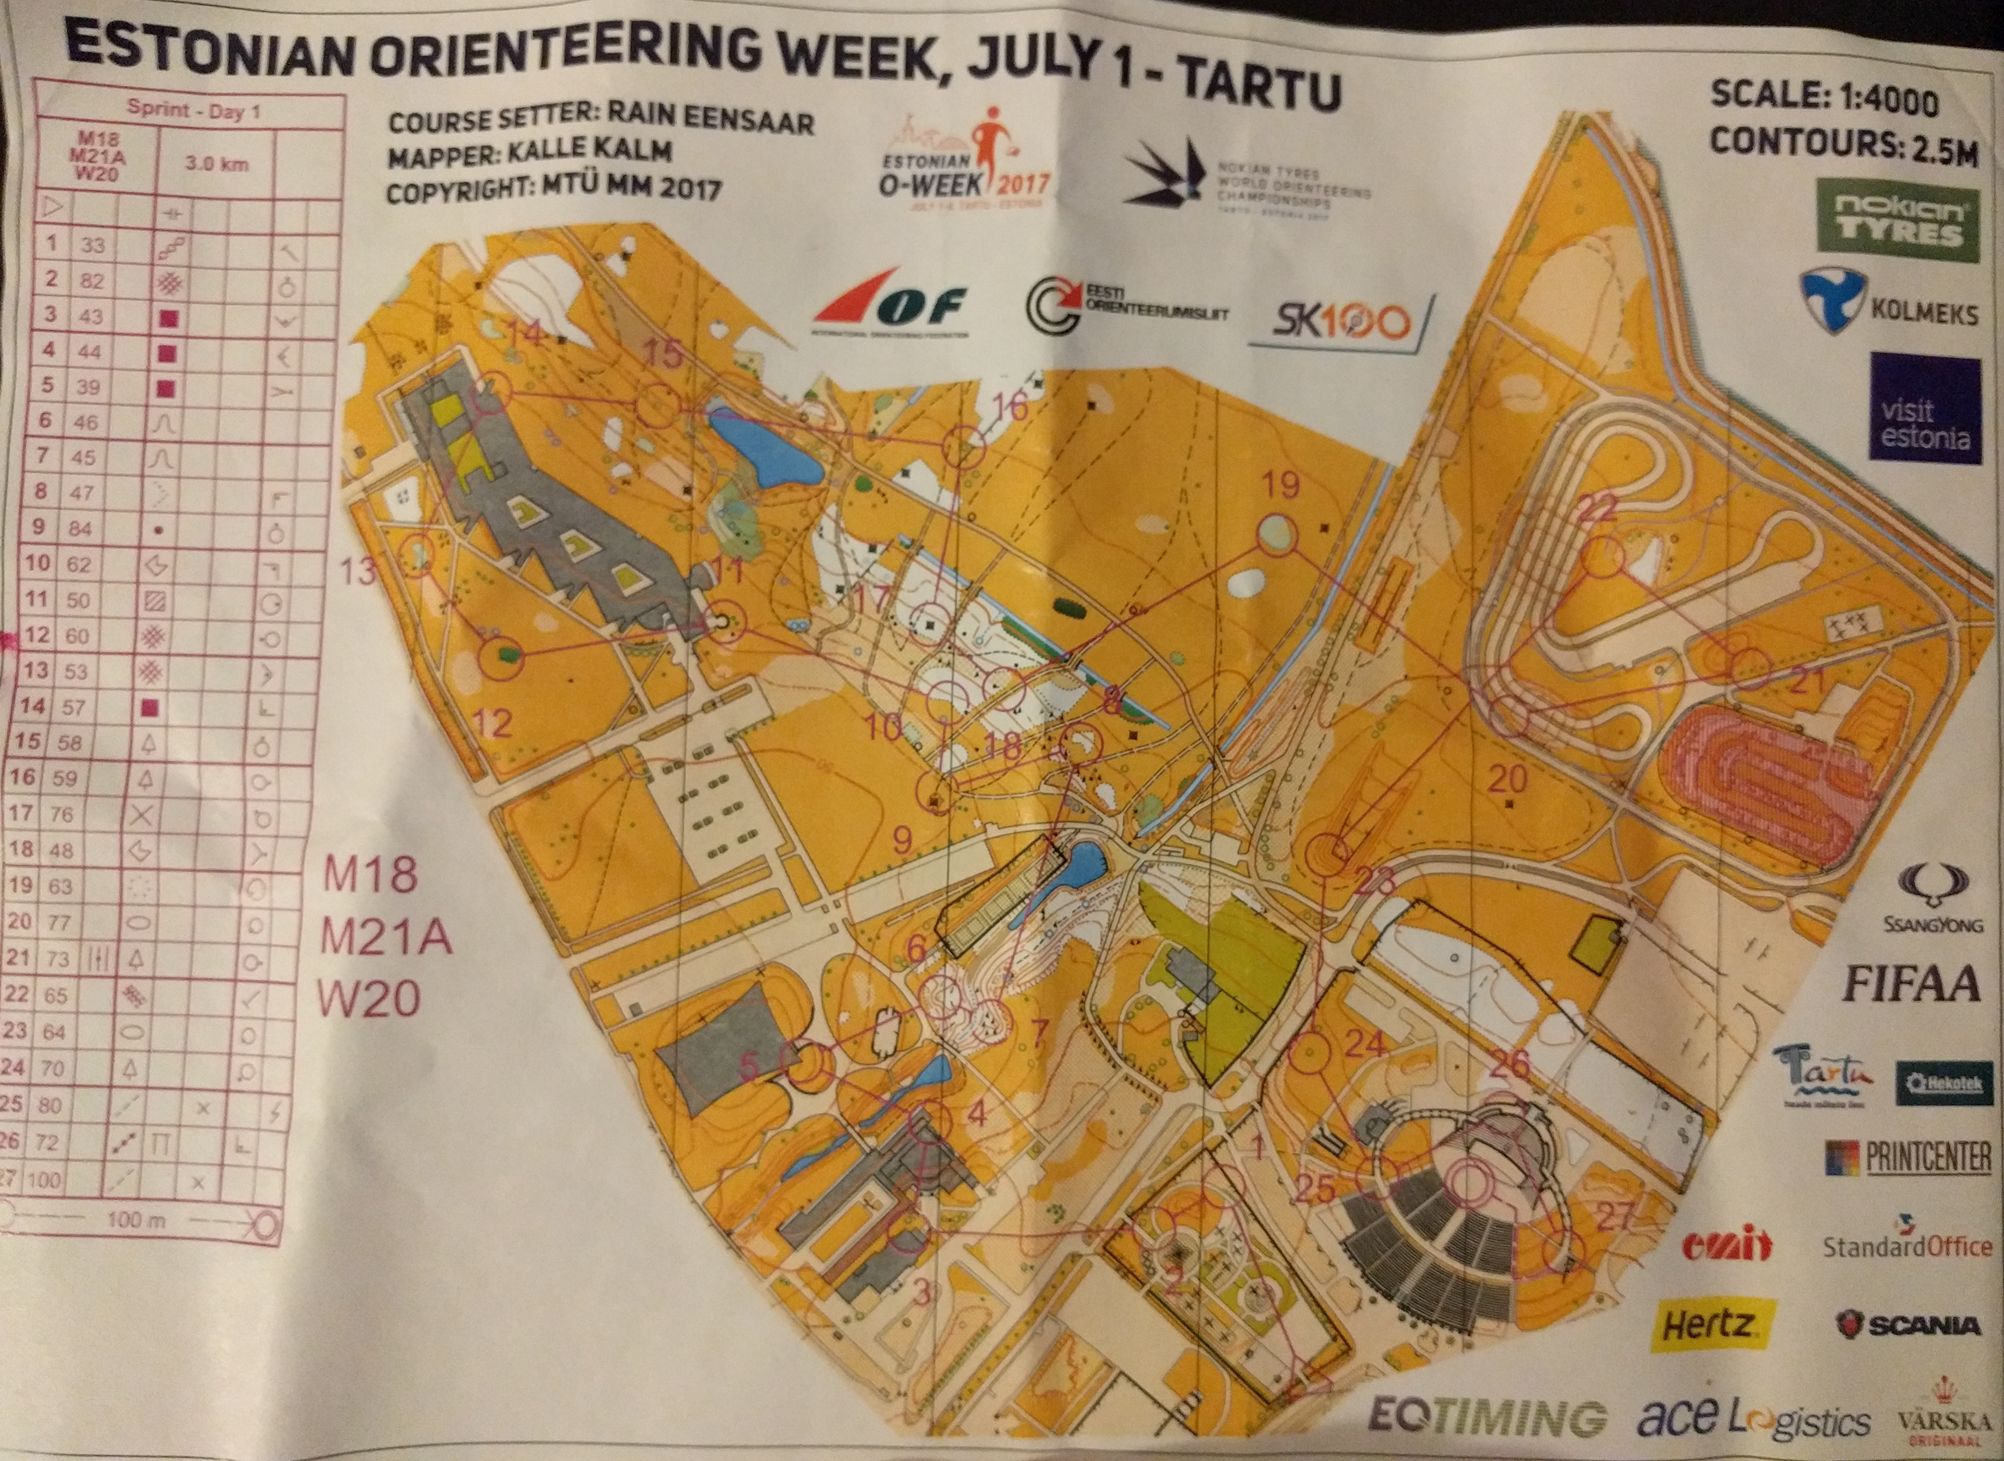 Estonian orienteering week 2017 (2017-07-01)